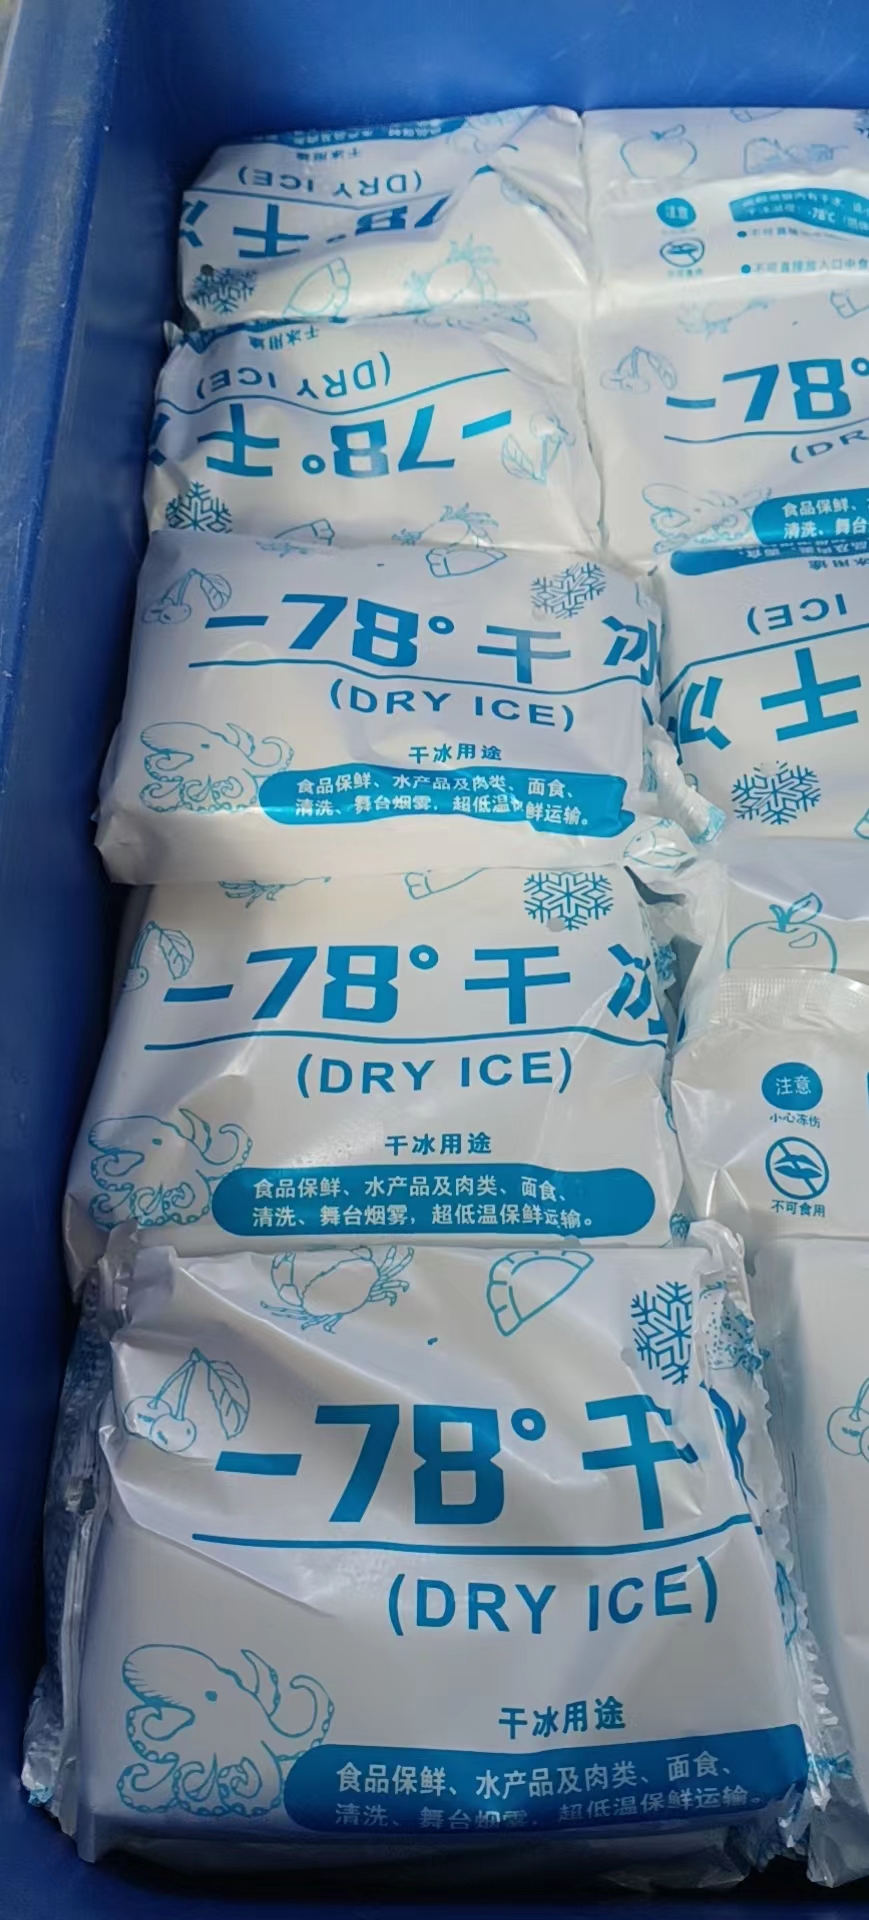 曲周县供应-78°干冰配送供应商哪里有、制造商、批发多少钱、配送价格